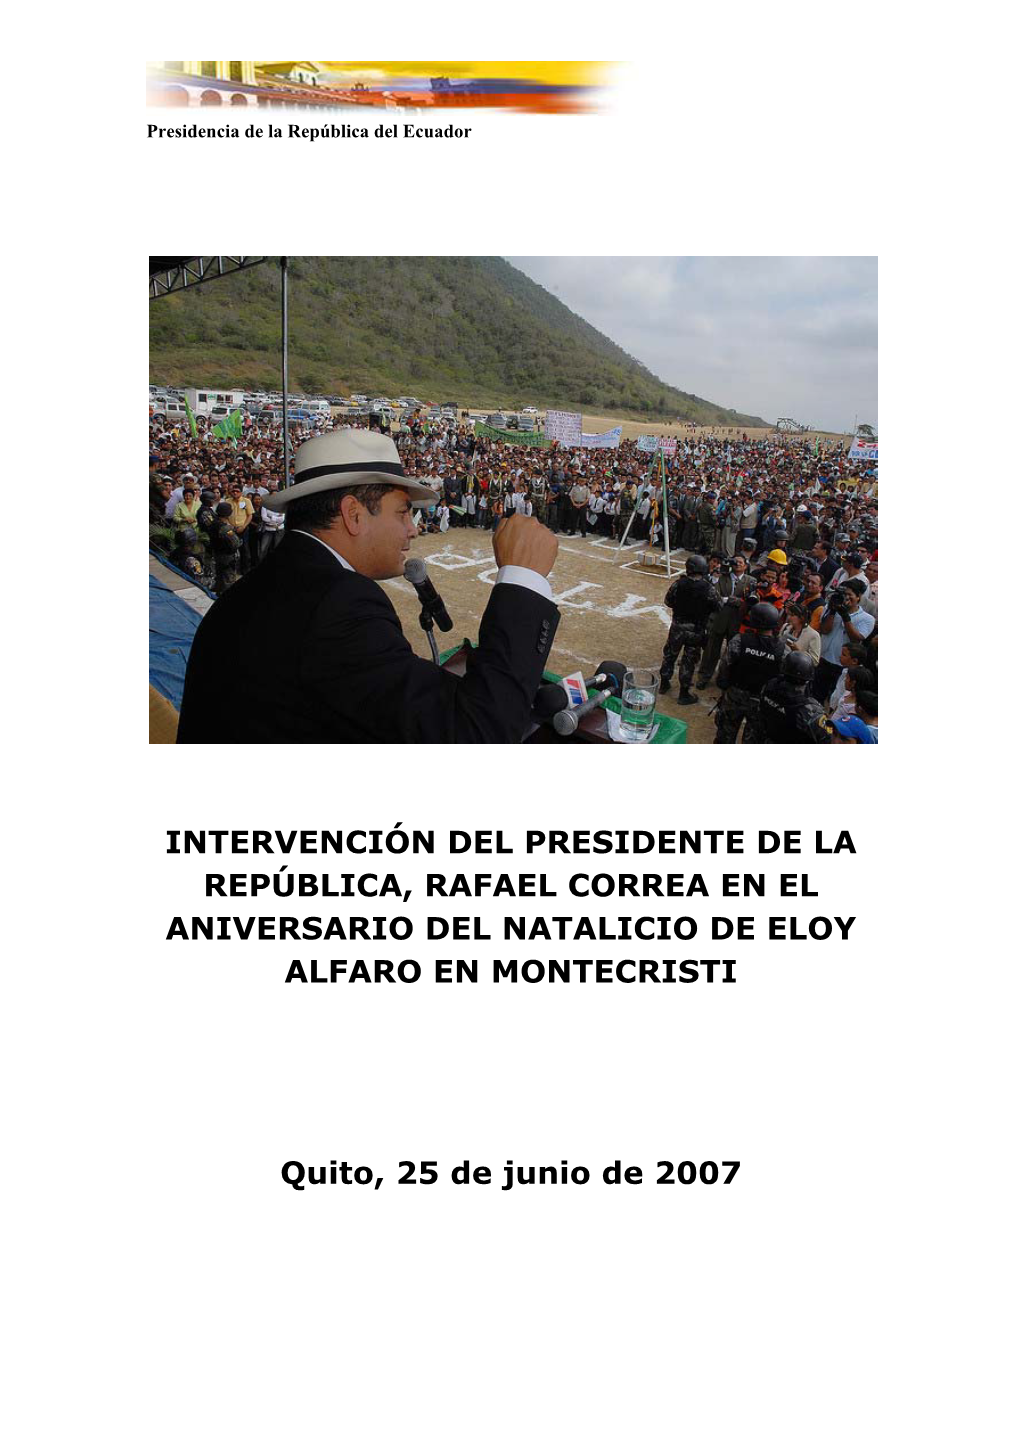 Intervención Del Presidente De La República, Rafael Correa En El Aniversario Del Natalicio De Eloy Alfaro En Montecristi